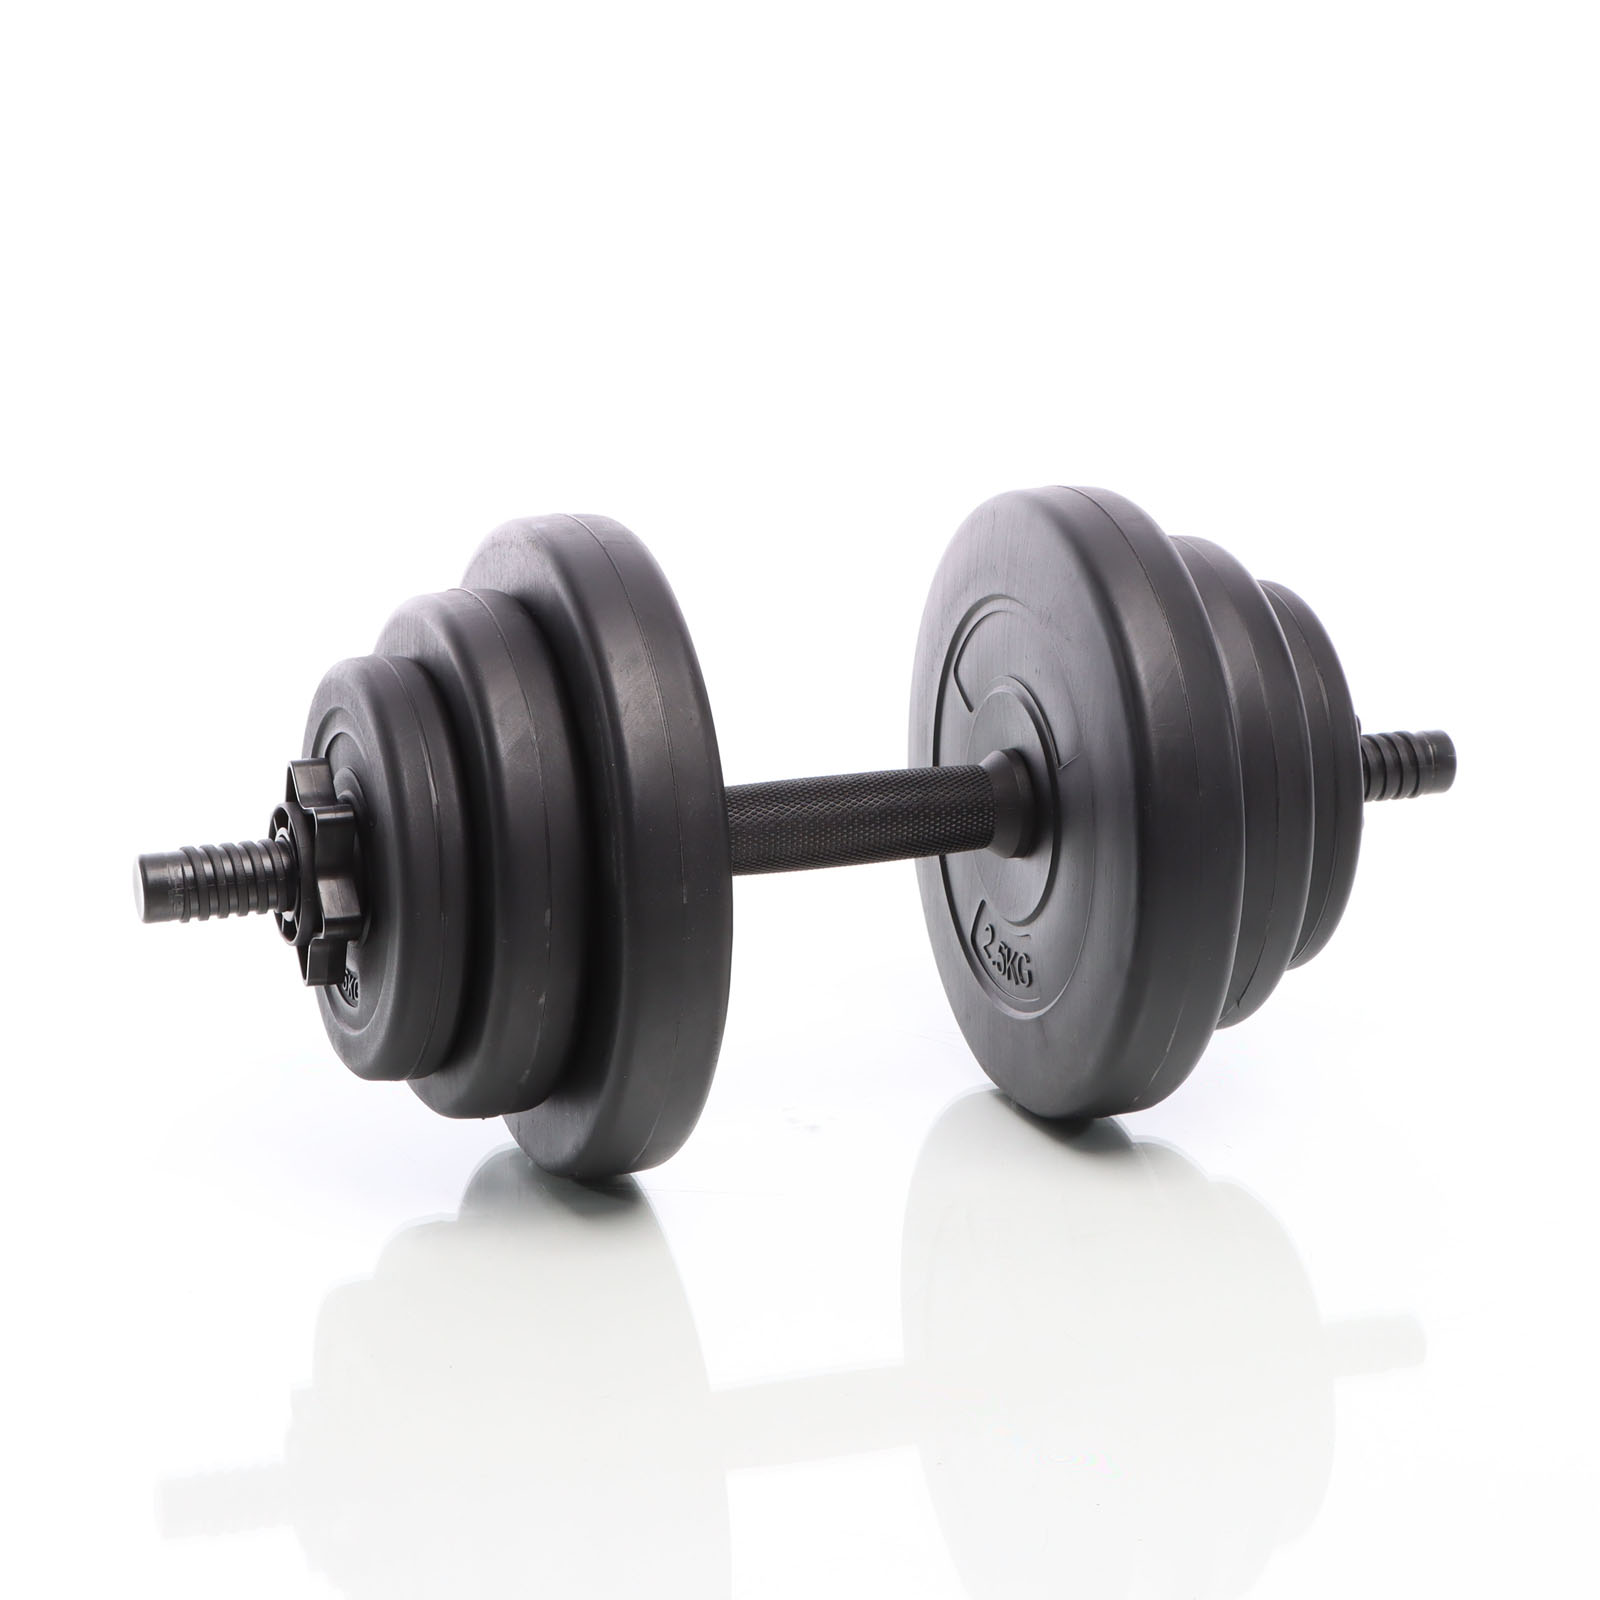 Set d'haltères courts poids barres disques fitness musculation biceps 10 kg